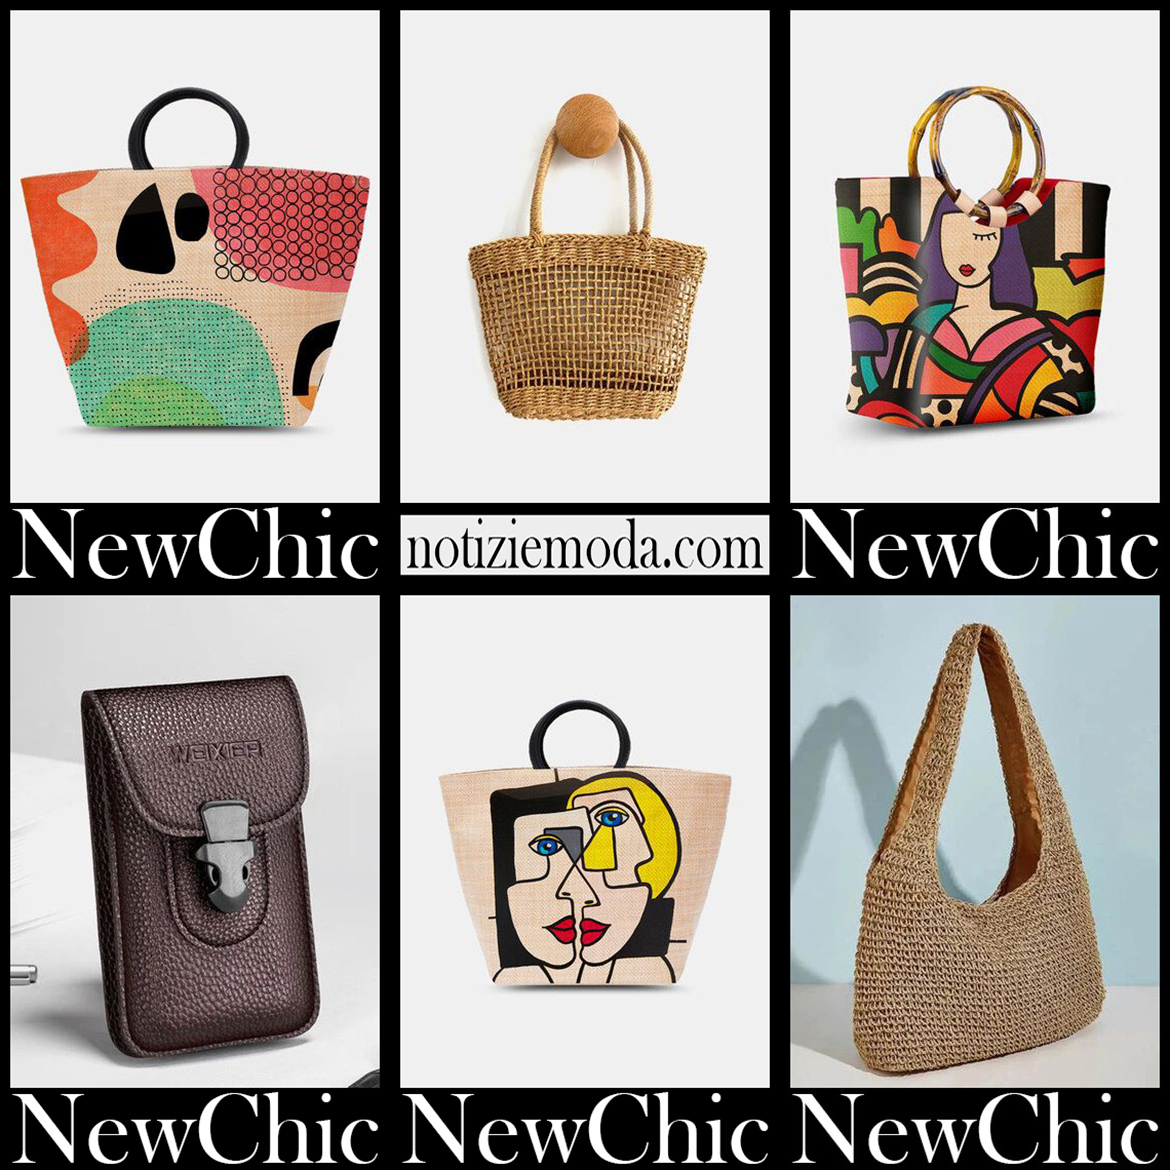 Nuovi arrivi borse paglia NewChic 2021 moda donna